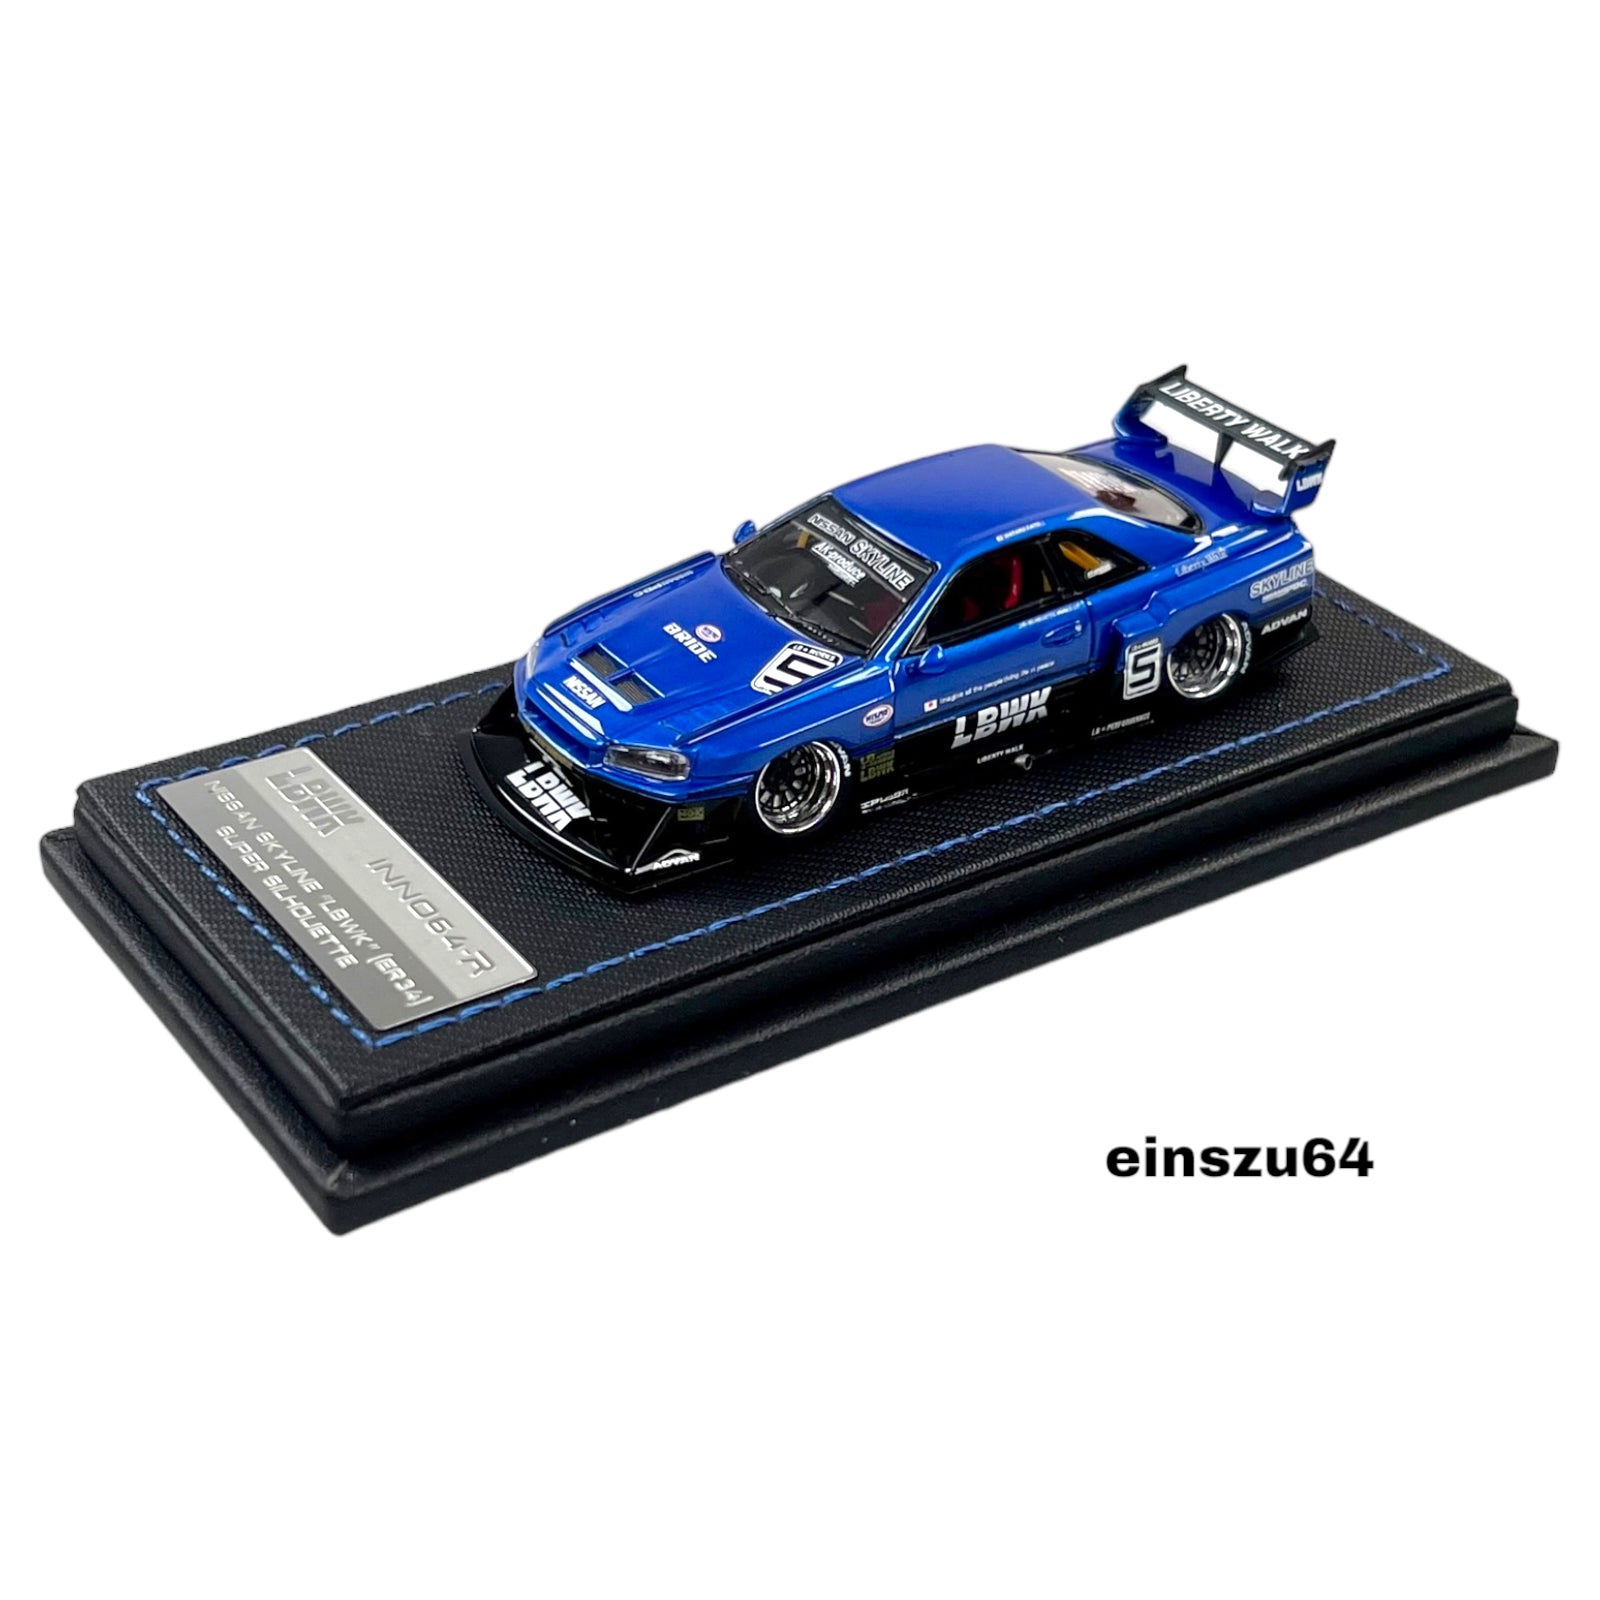 INNO64 - *Resin* Nissan Skyline *LBWK* (ER34) Super Silhouette, blue/black  - IN64R-ER34-BLU